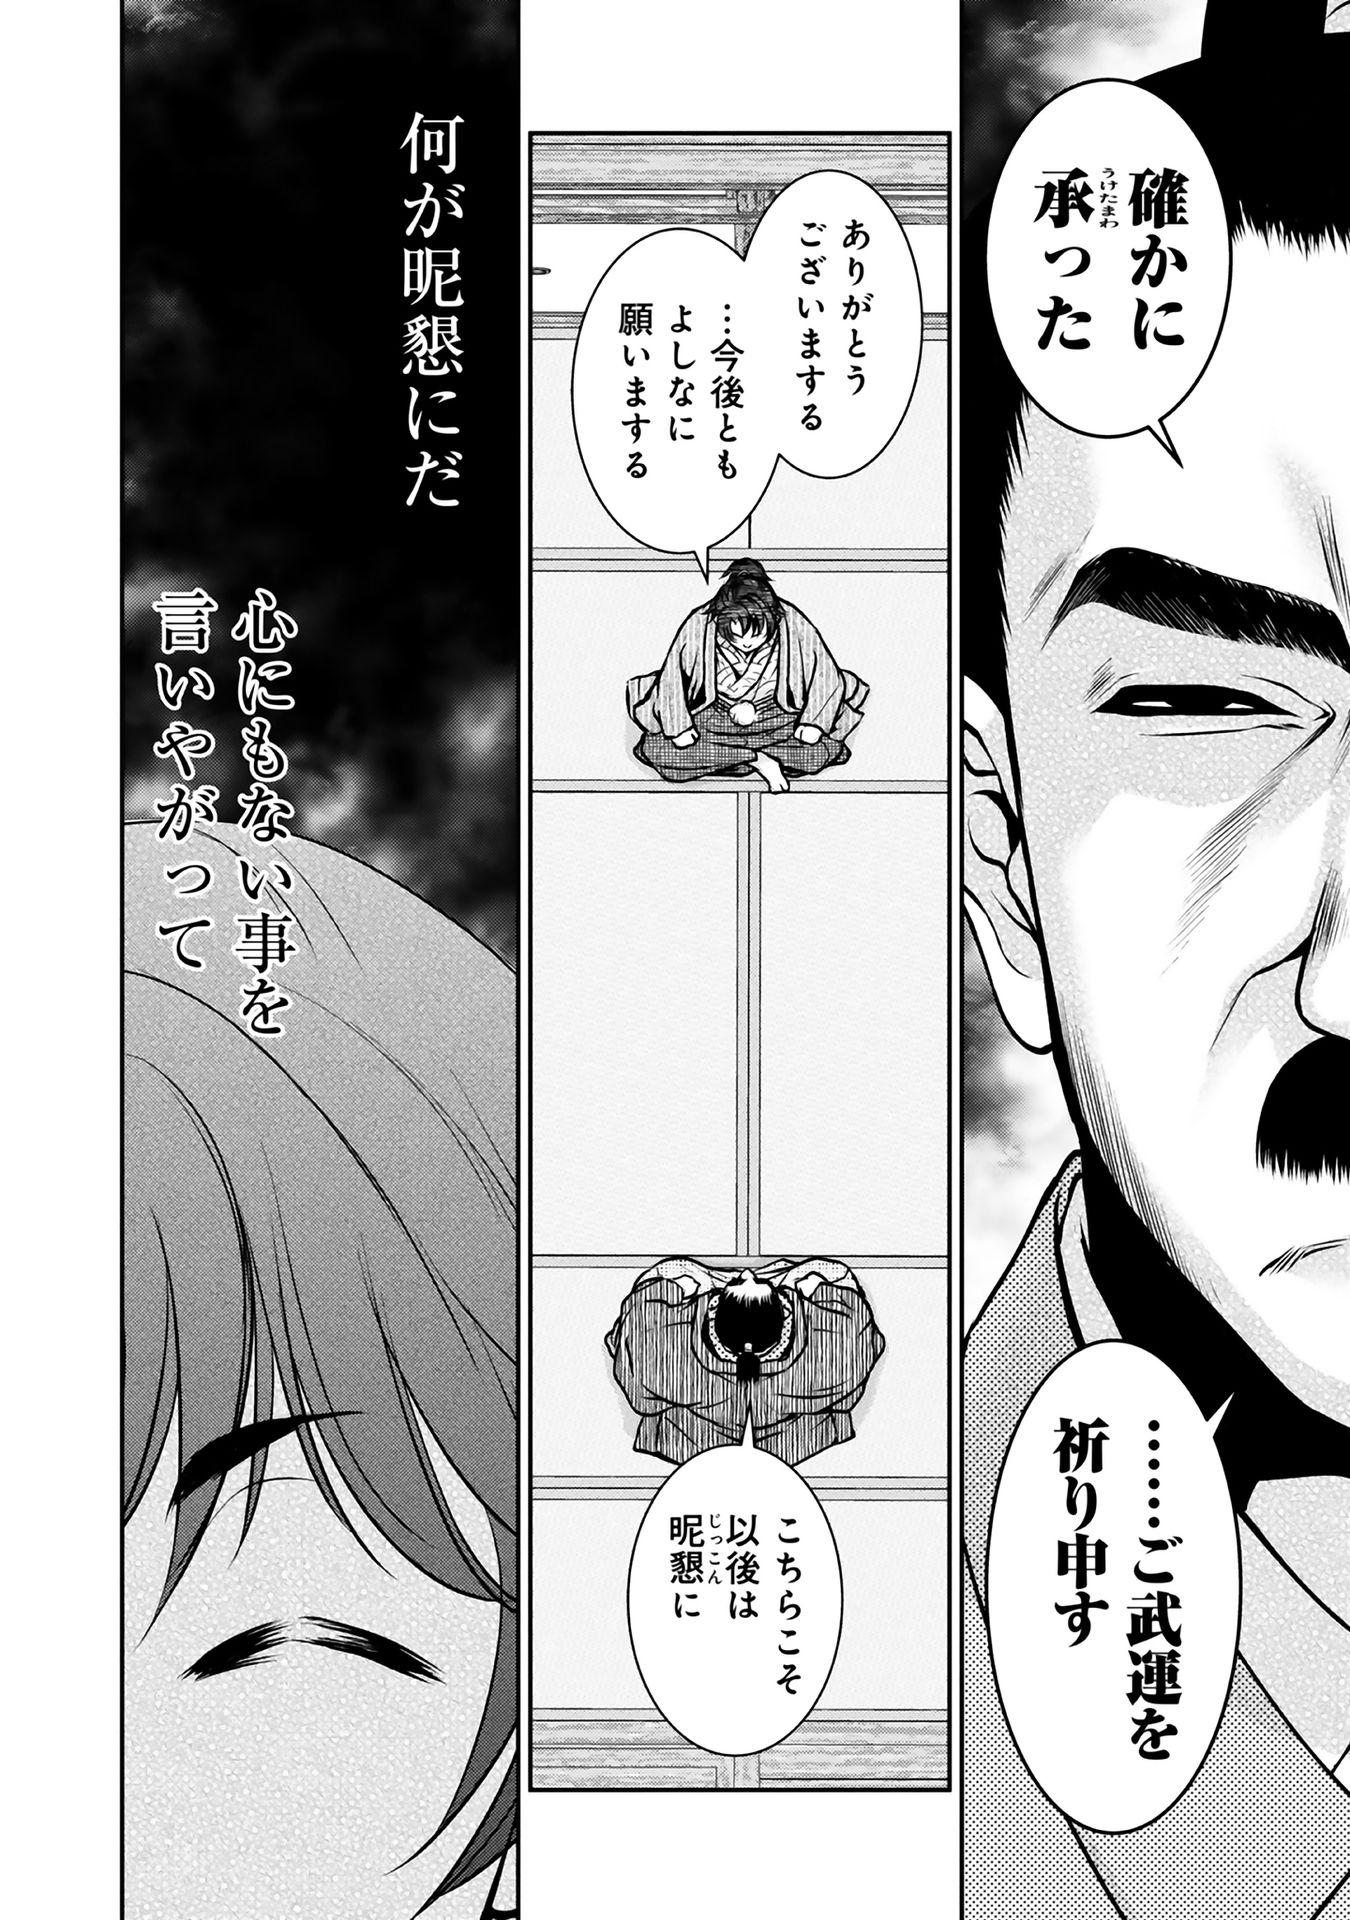 Afumi no Umi – Minamo ga Yureru Toki - Chapter 9 - Page 20